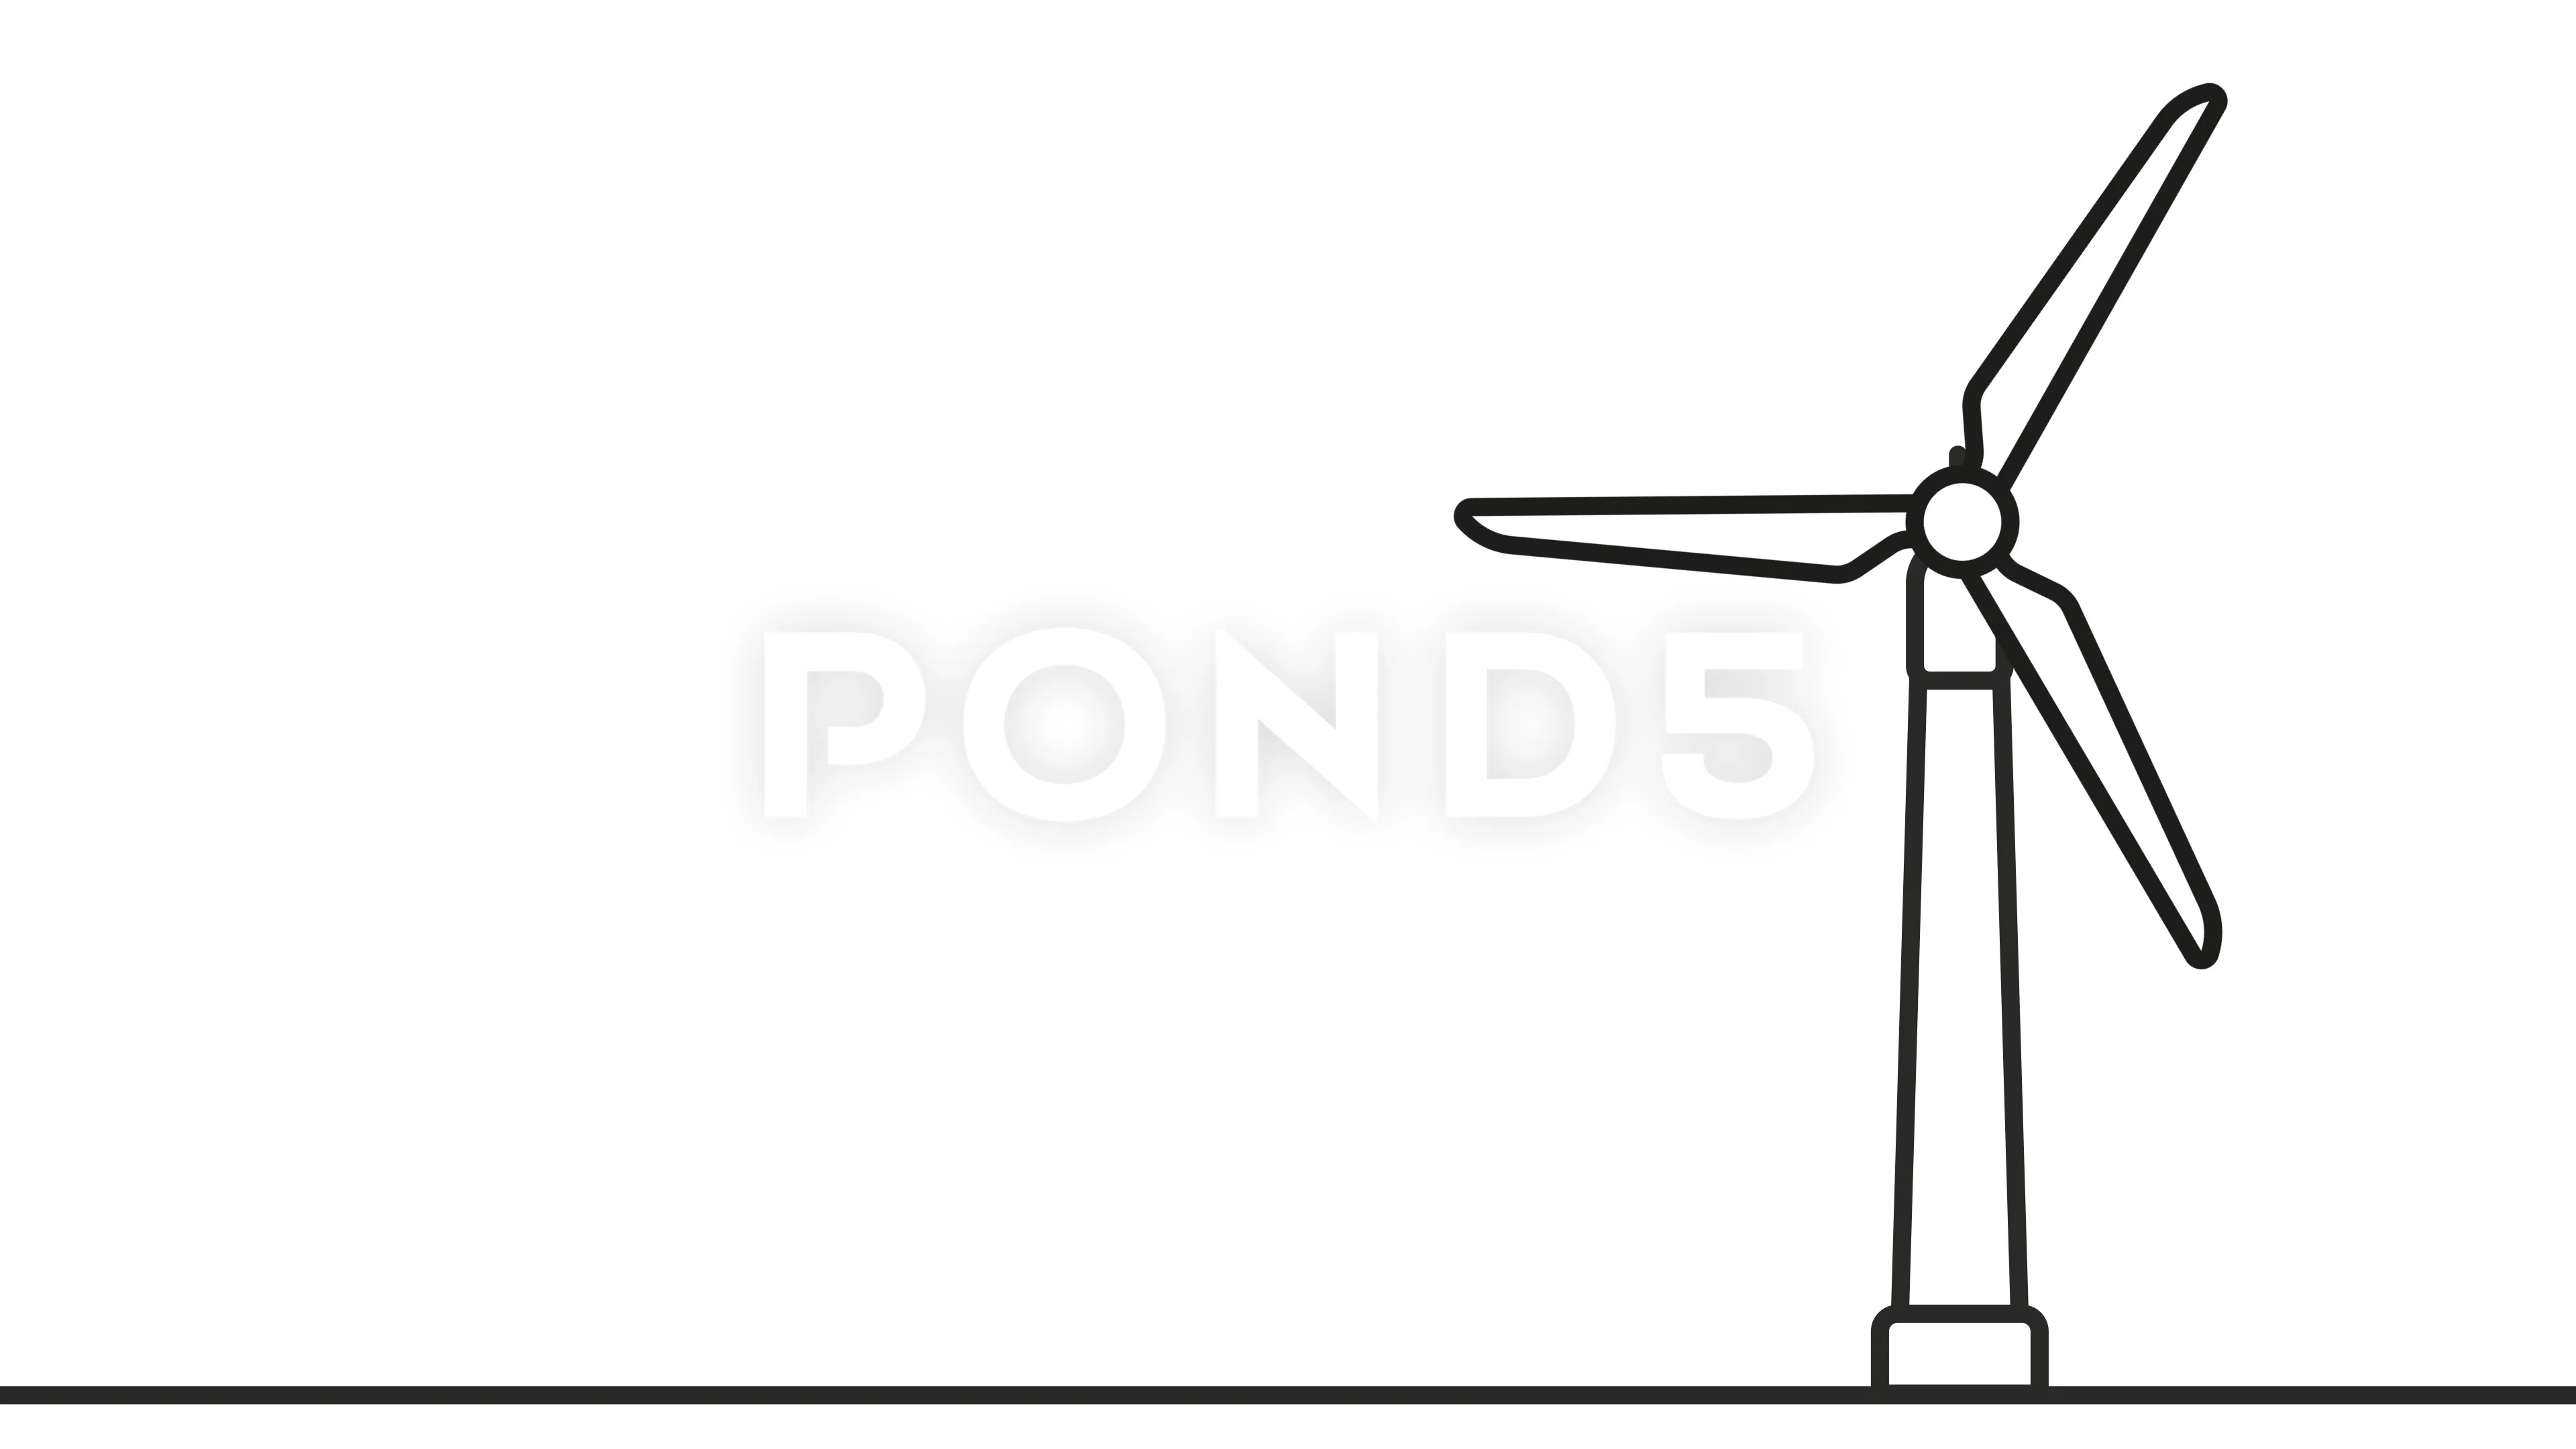 cartoon wind turbine